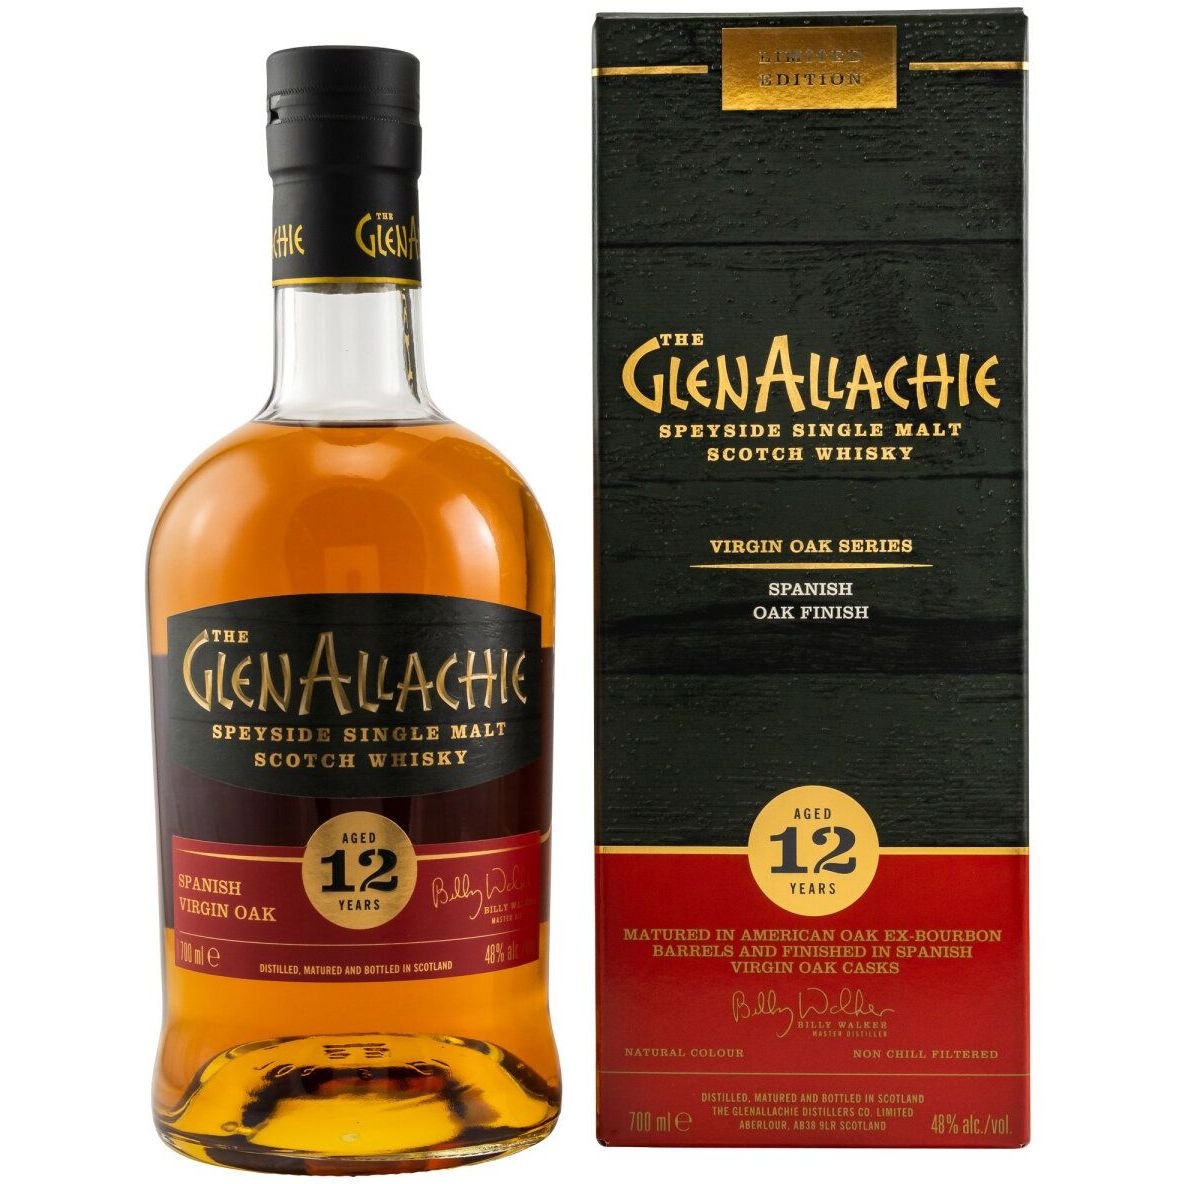 Віскі Glenallachie 12 yo Spanish Virgin Oak Single Malt Scotch Whisky, 48%, у подарунковій упаковці, 0,7 л - фото 1